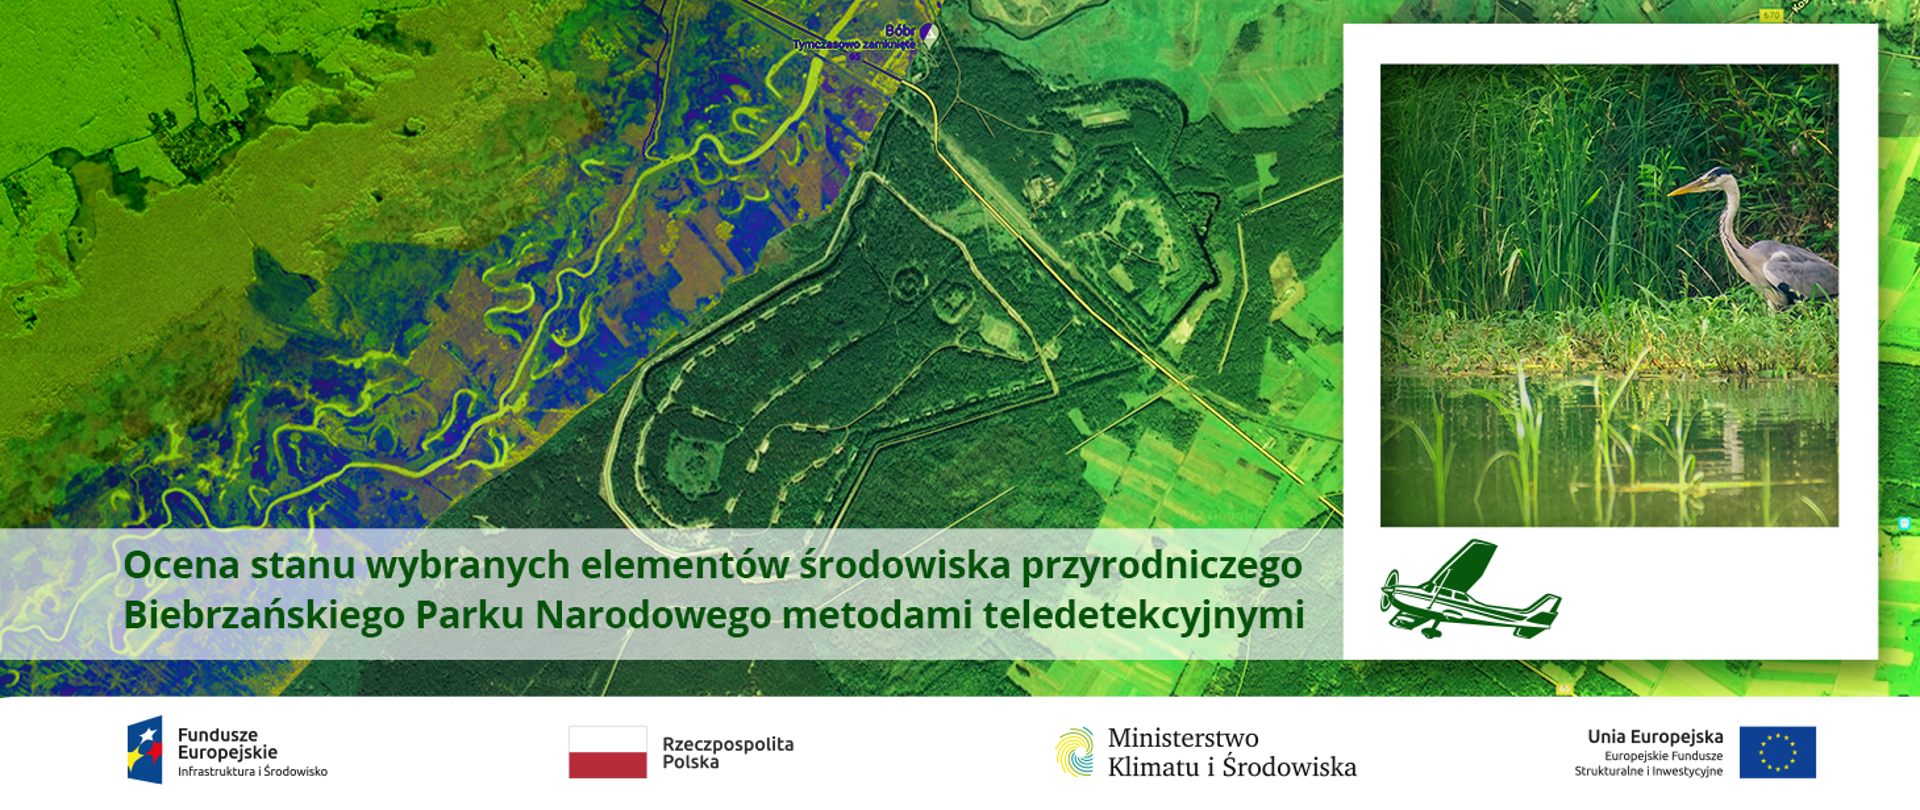 Ocena stanu wybranych elementów środowiska przyrodniczego Biebrzańskiego Parku Narodowego metodami teledetekcyjnymi